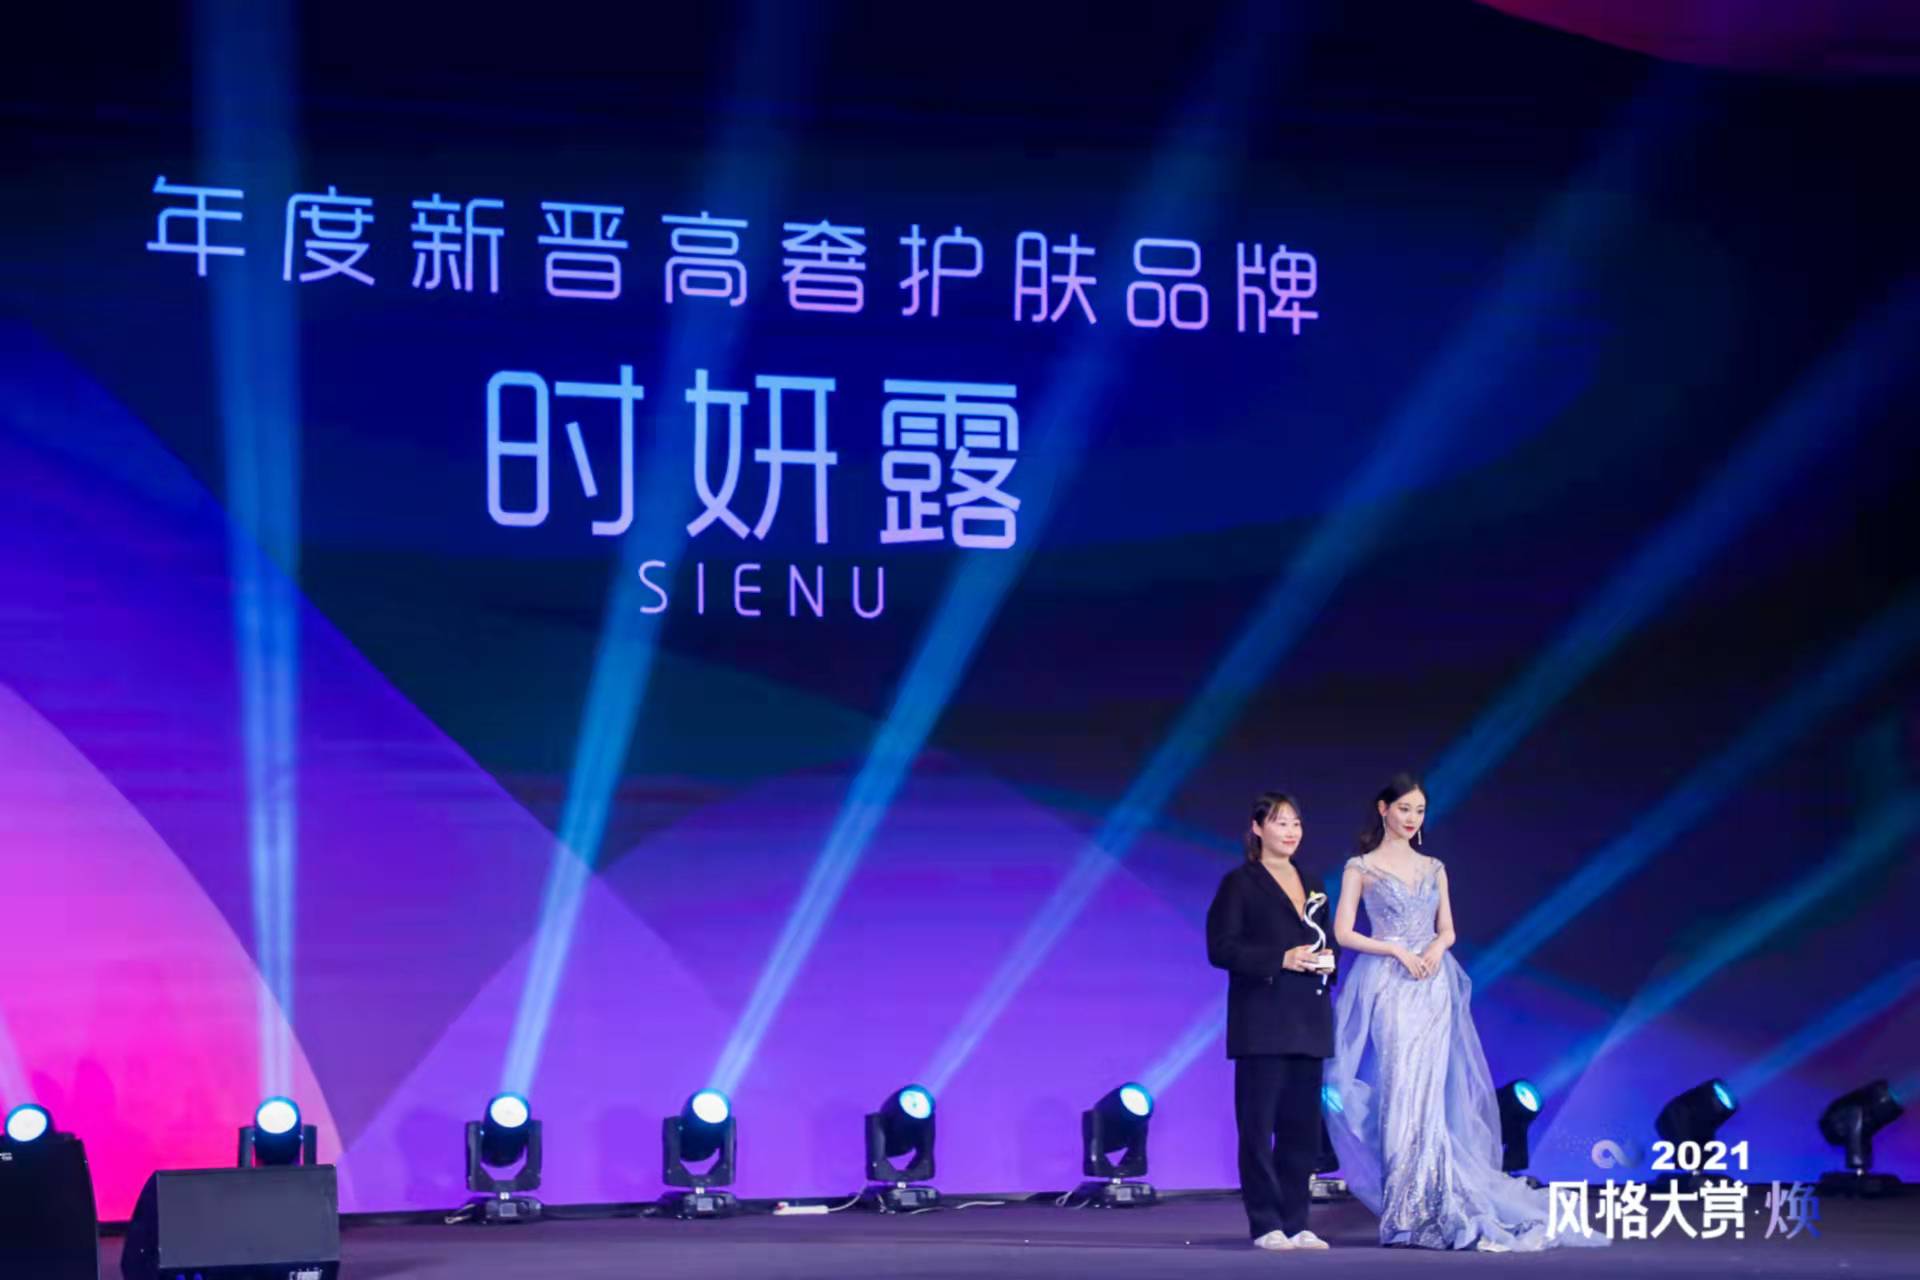 时妍露SIENU获评2021风格大赏“年度新晋高奢护肤品牌”大奖 